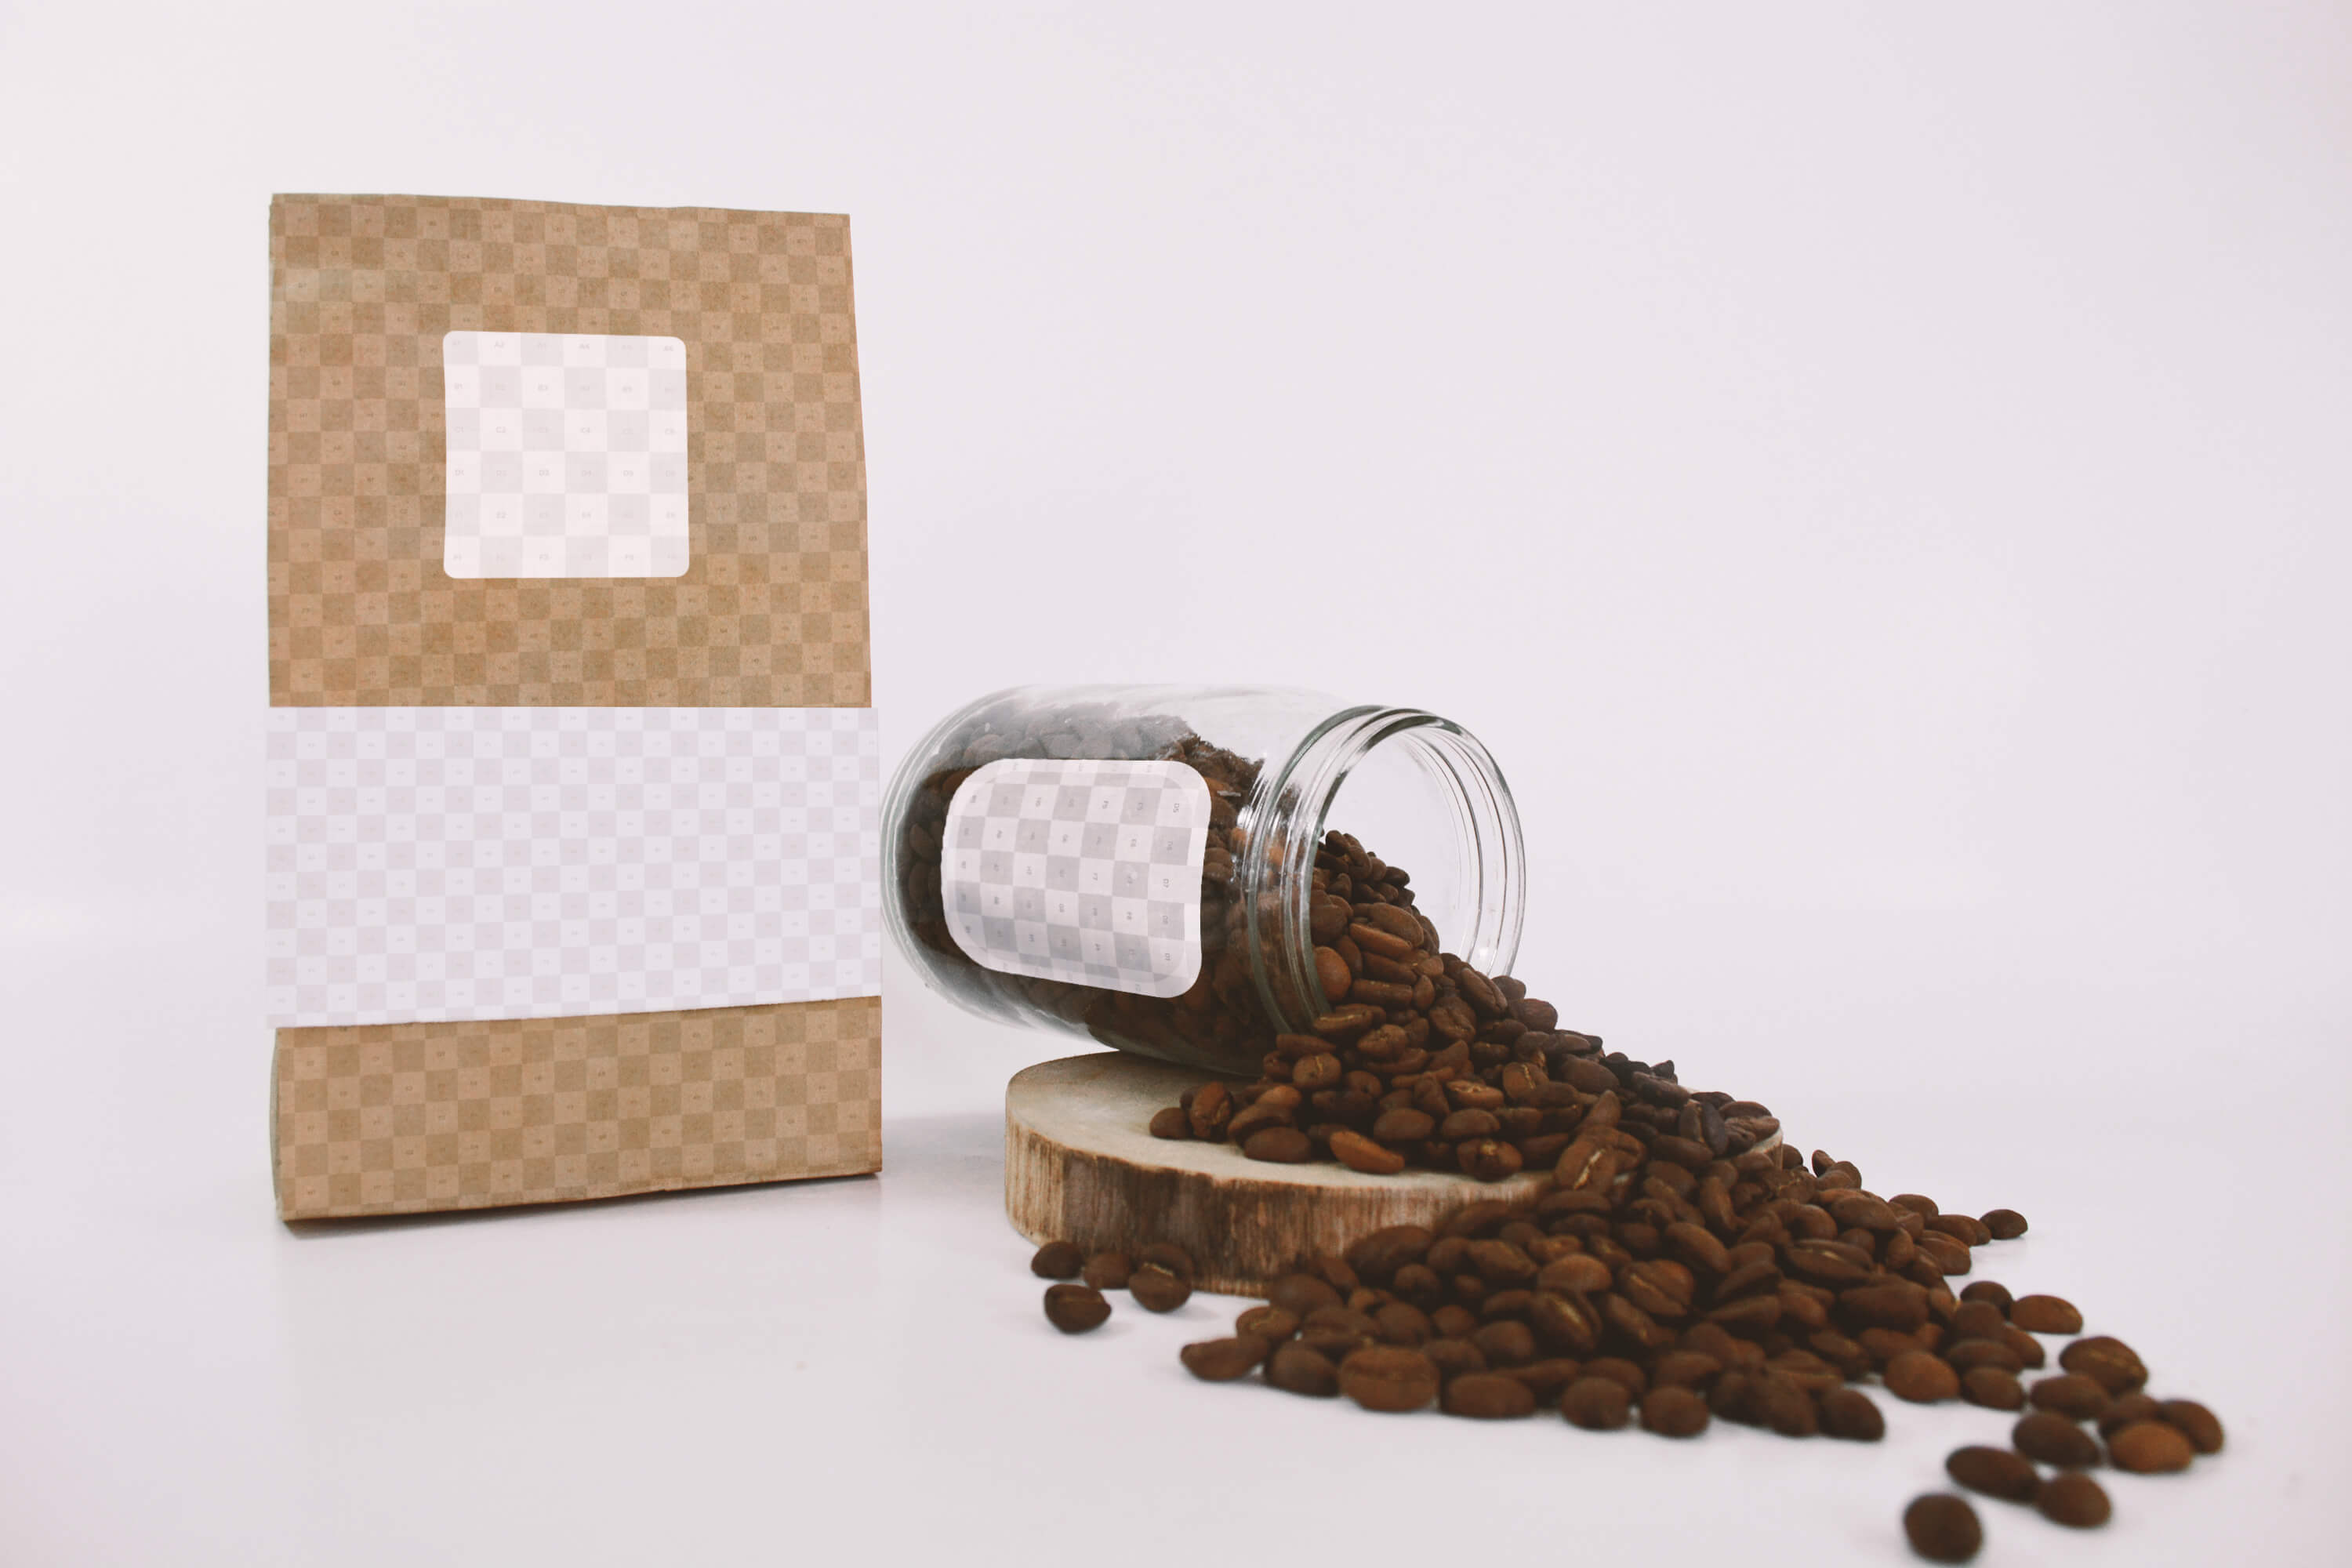 咖啡豆包装袋&玻璃存储罐样机模板 Coffee Bag and Glass Jar Mockup插图(1)